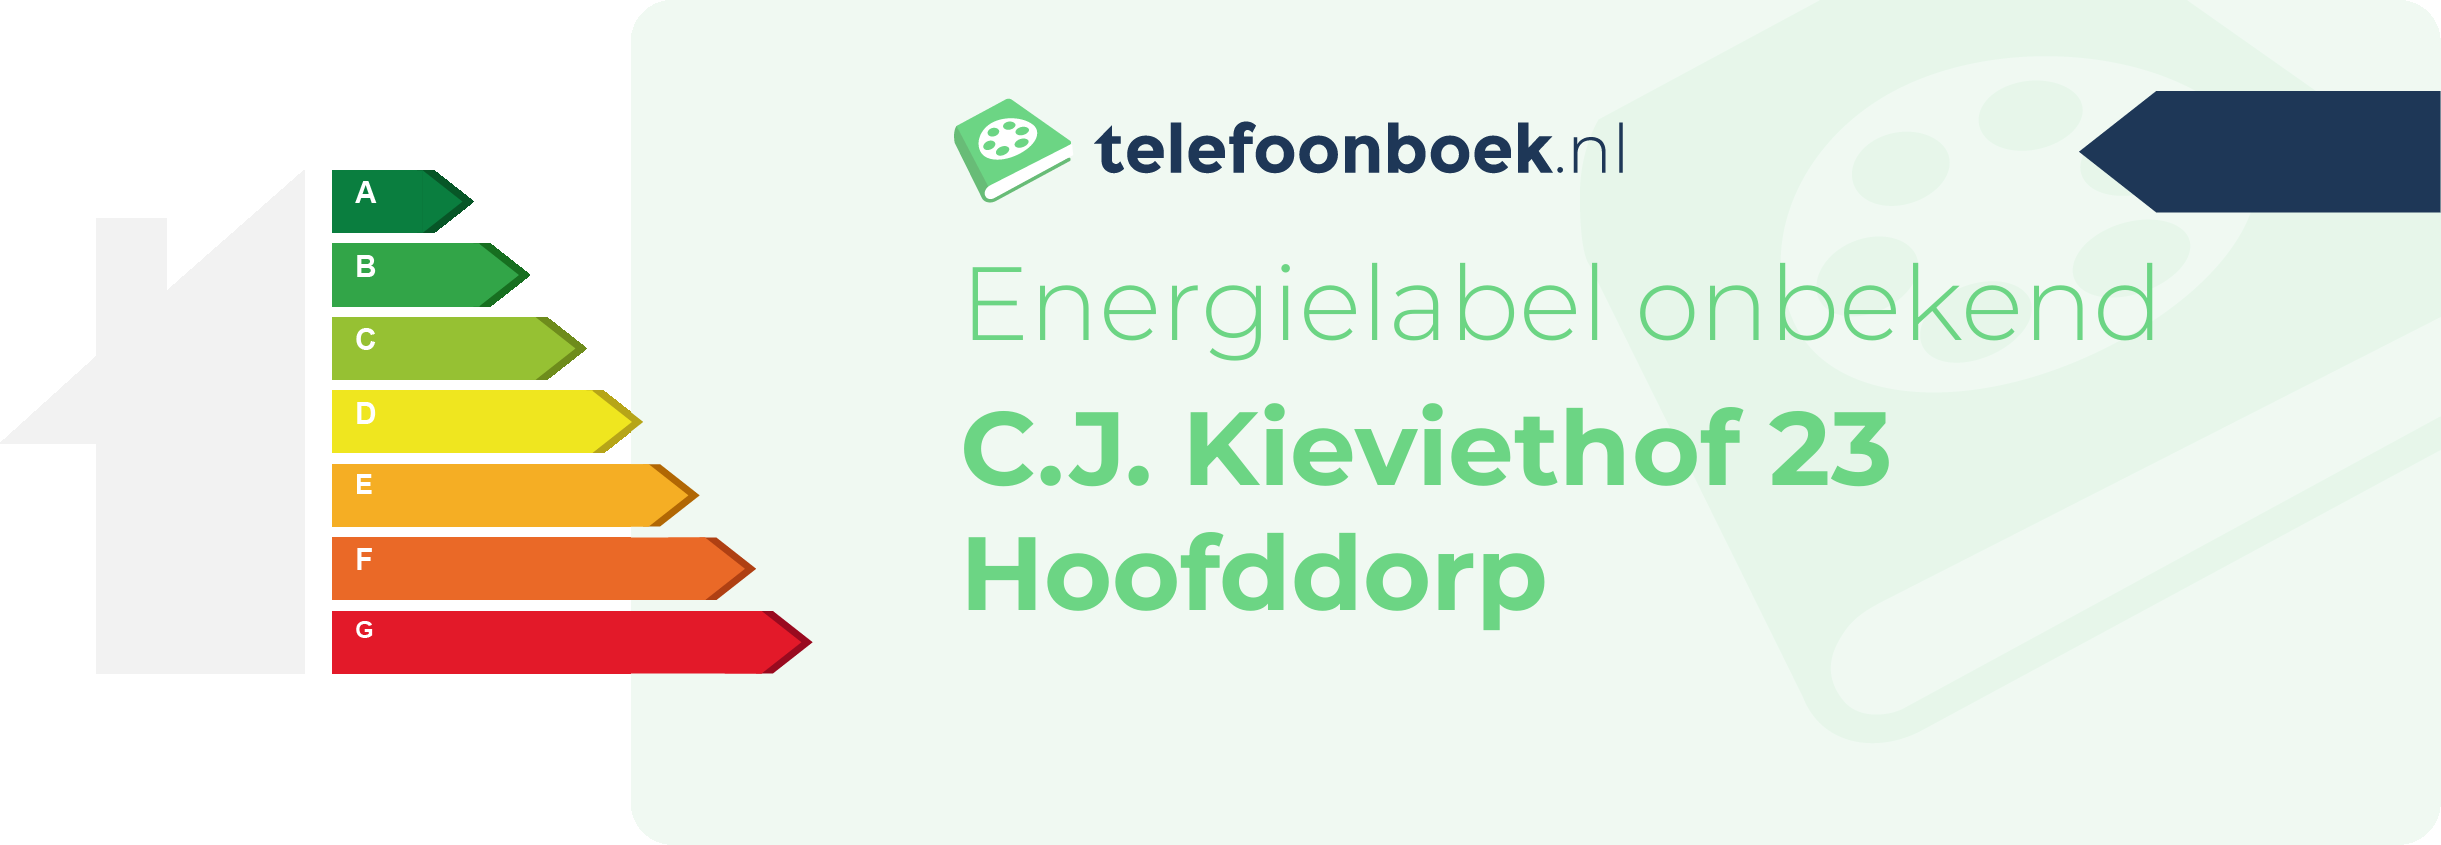 Energielabel C.J. Kieviethof 23 Hoofddorp